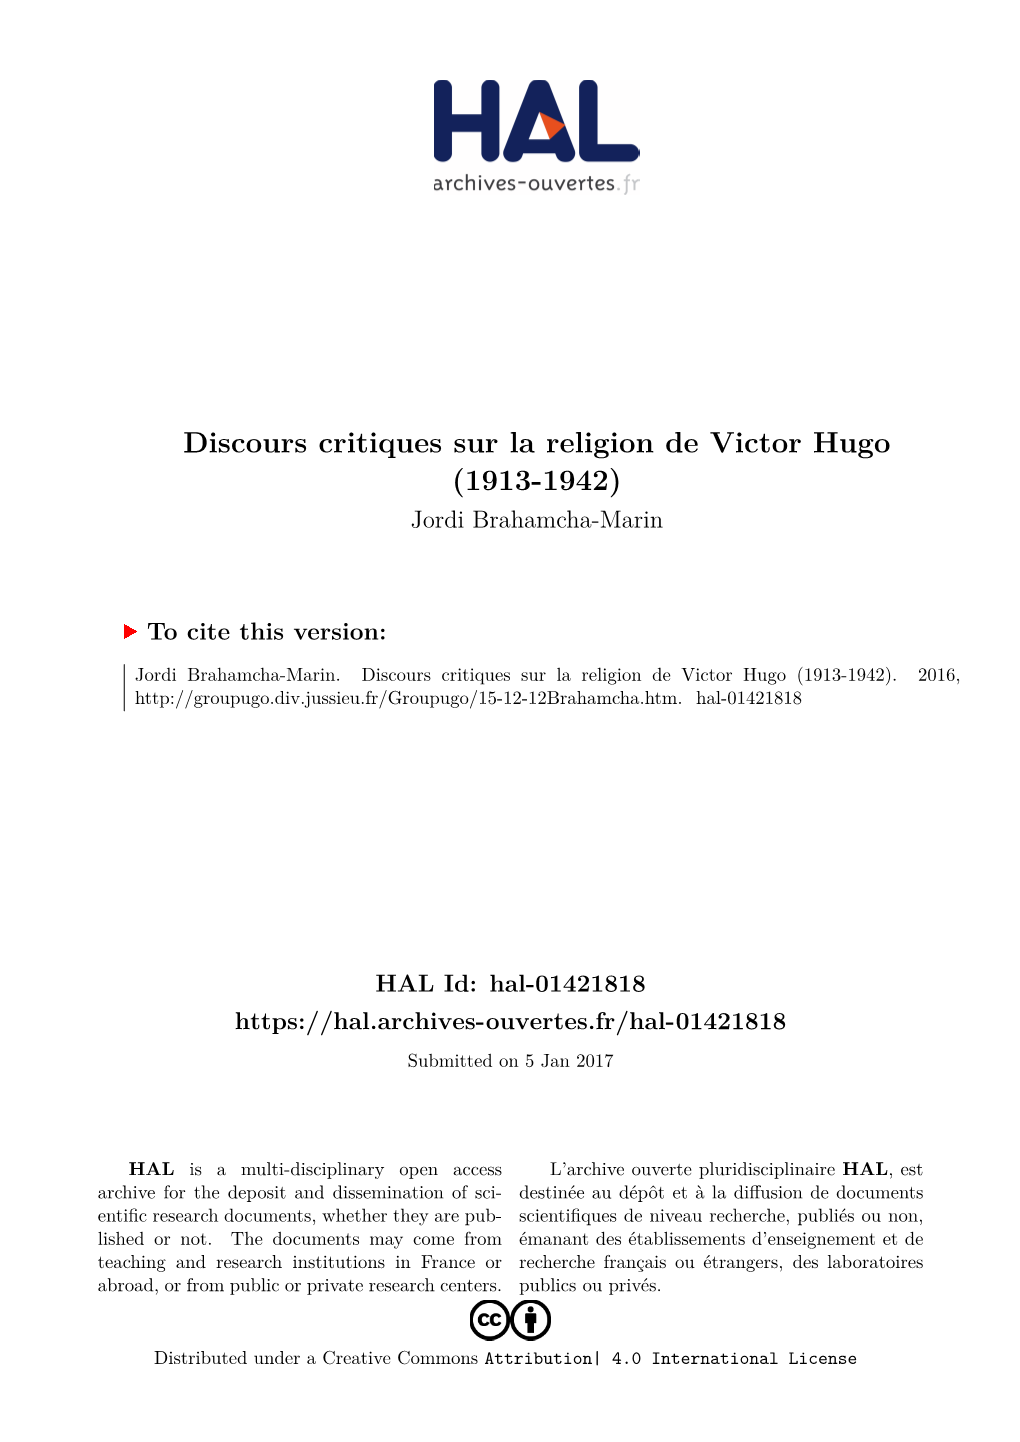 Discours Critiques Sur La Religion De Victor Hugo (1913-1942) Jordi Brahamcha-Marin